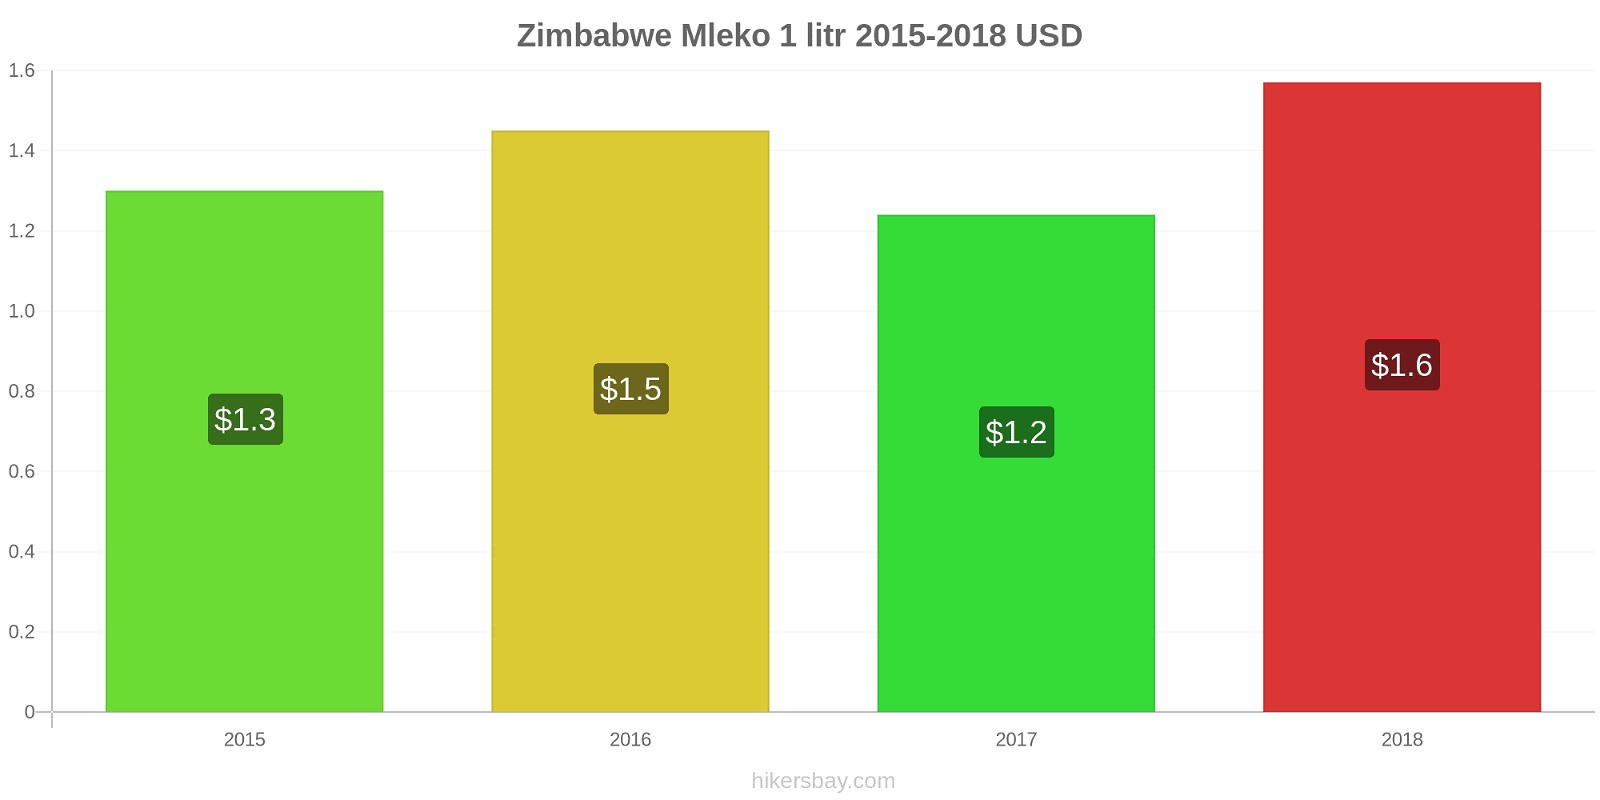 Zimbabwe zmiany cen Mleko (1 litr) hikersbay.com